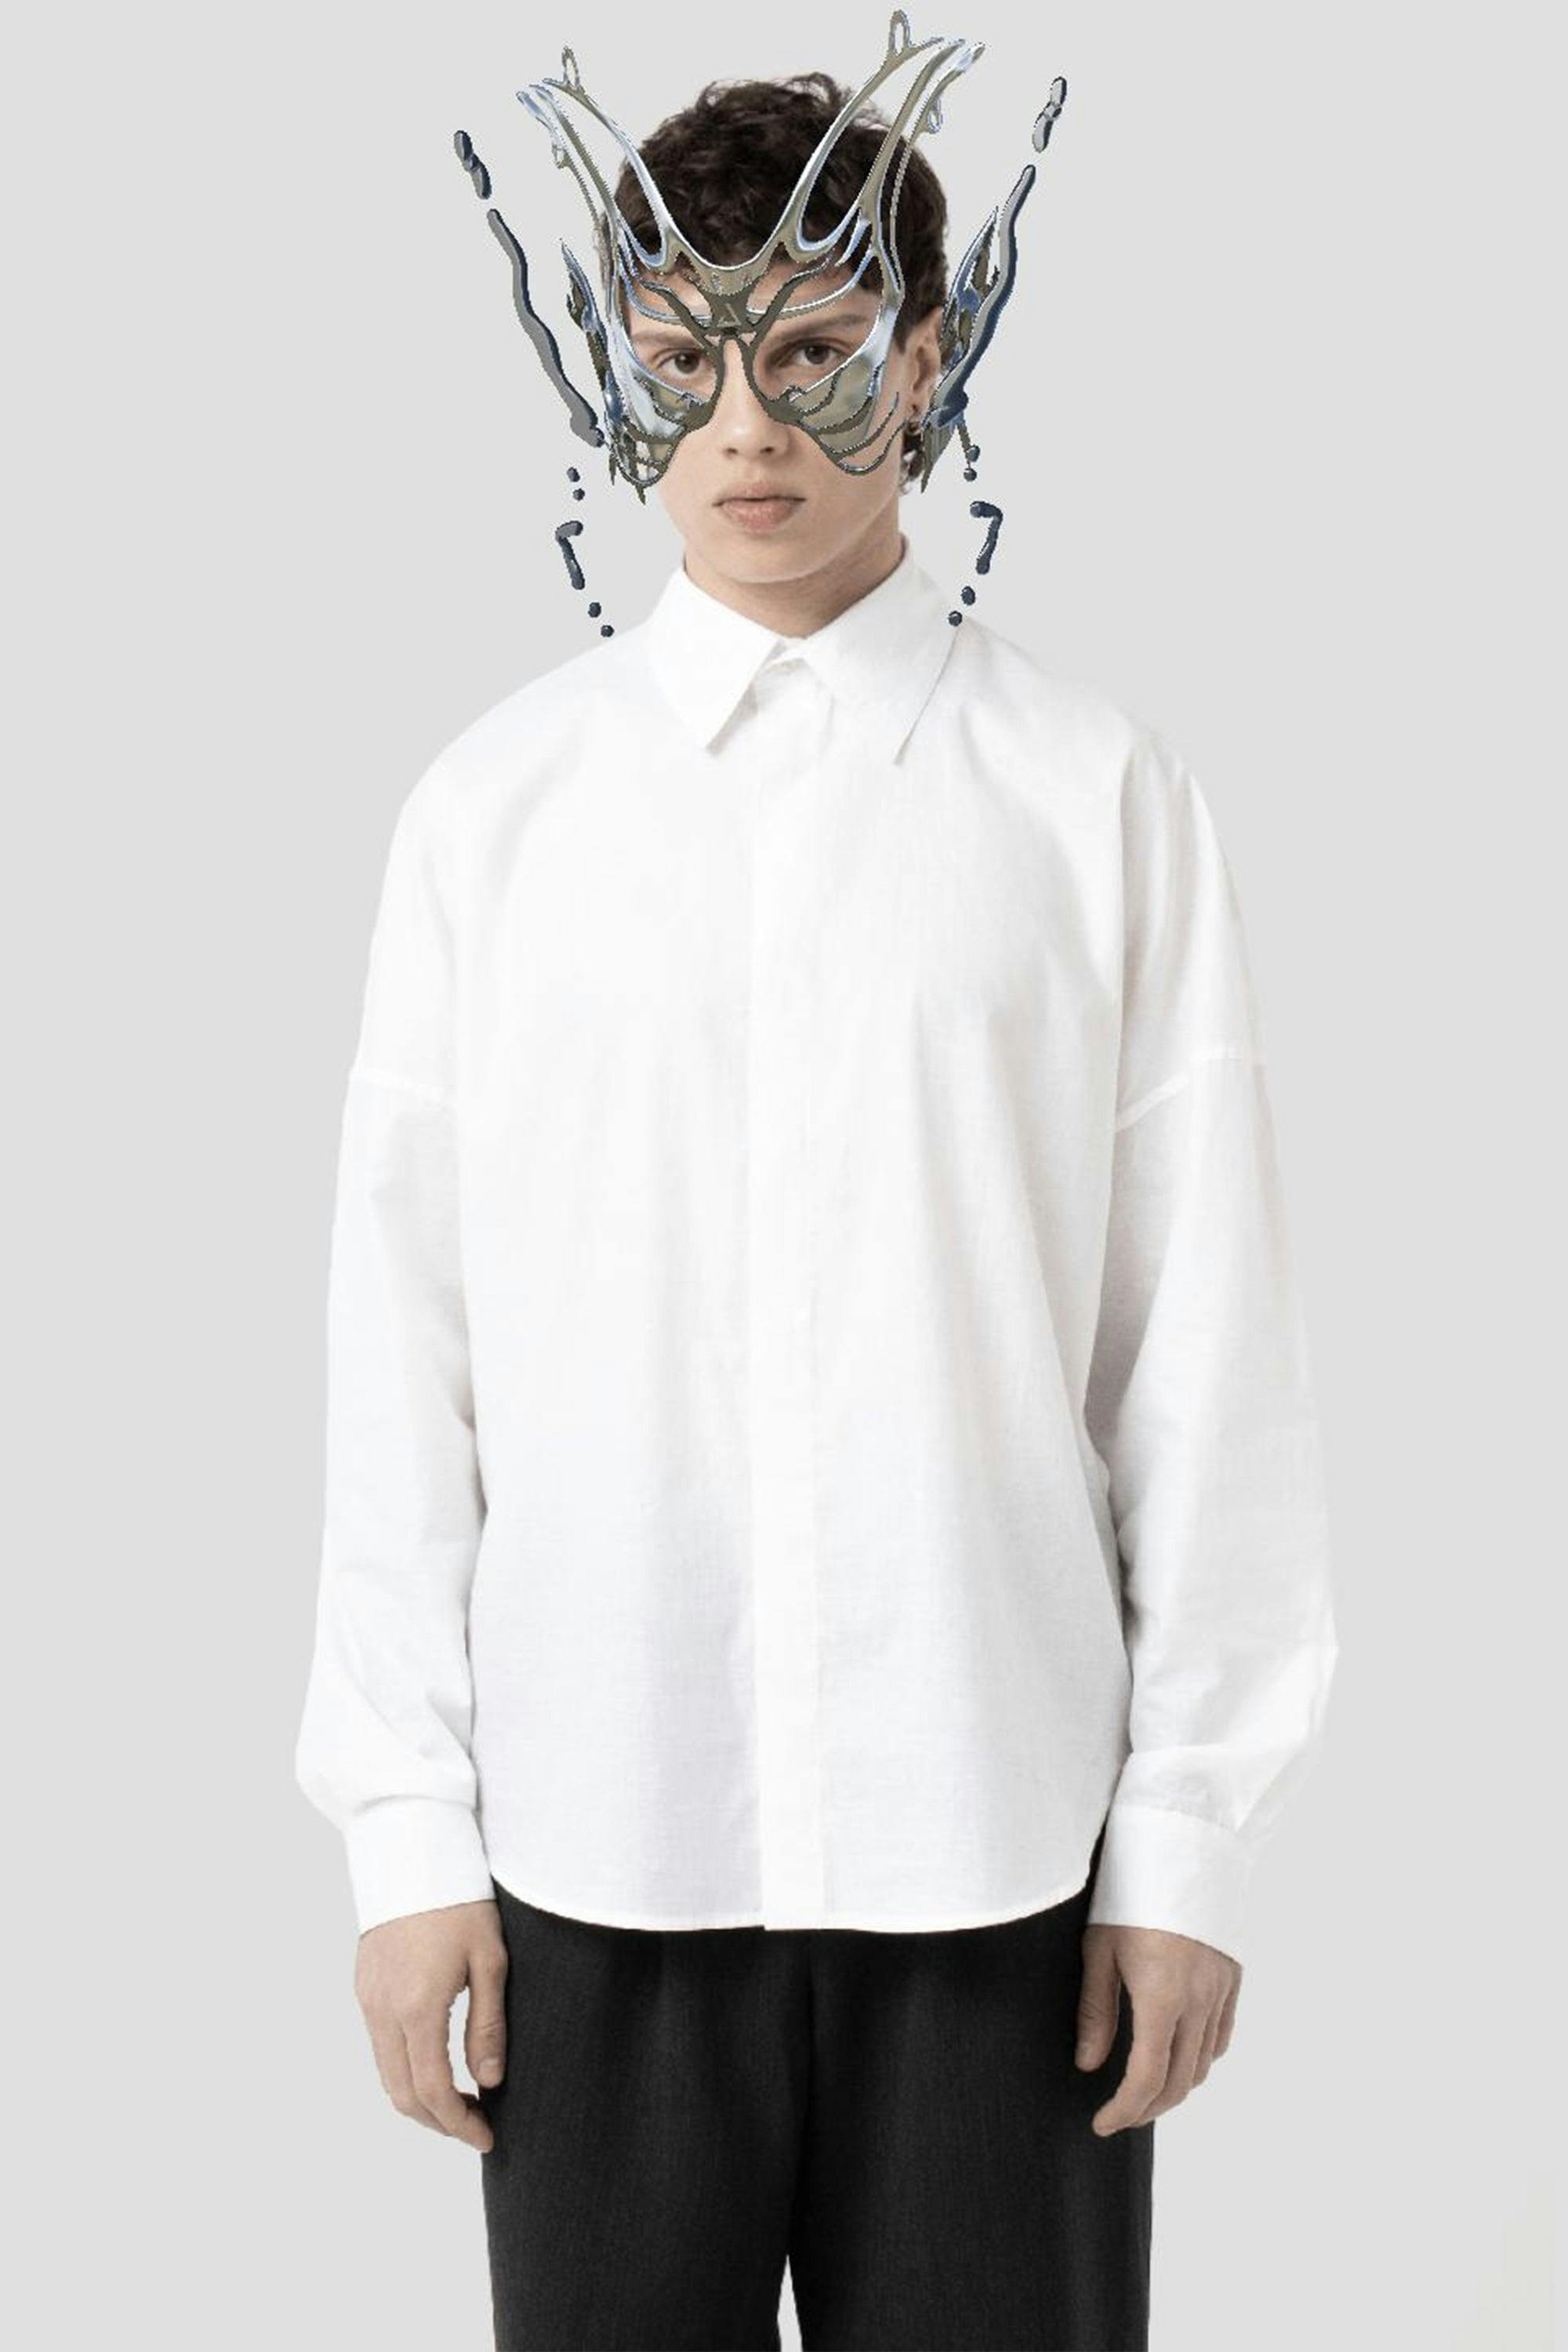 JNORIG White Long-Sleeved dress Shirt AR